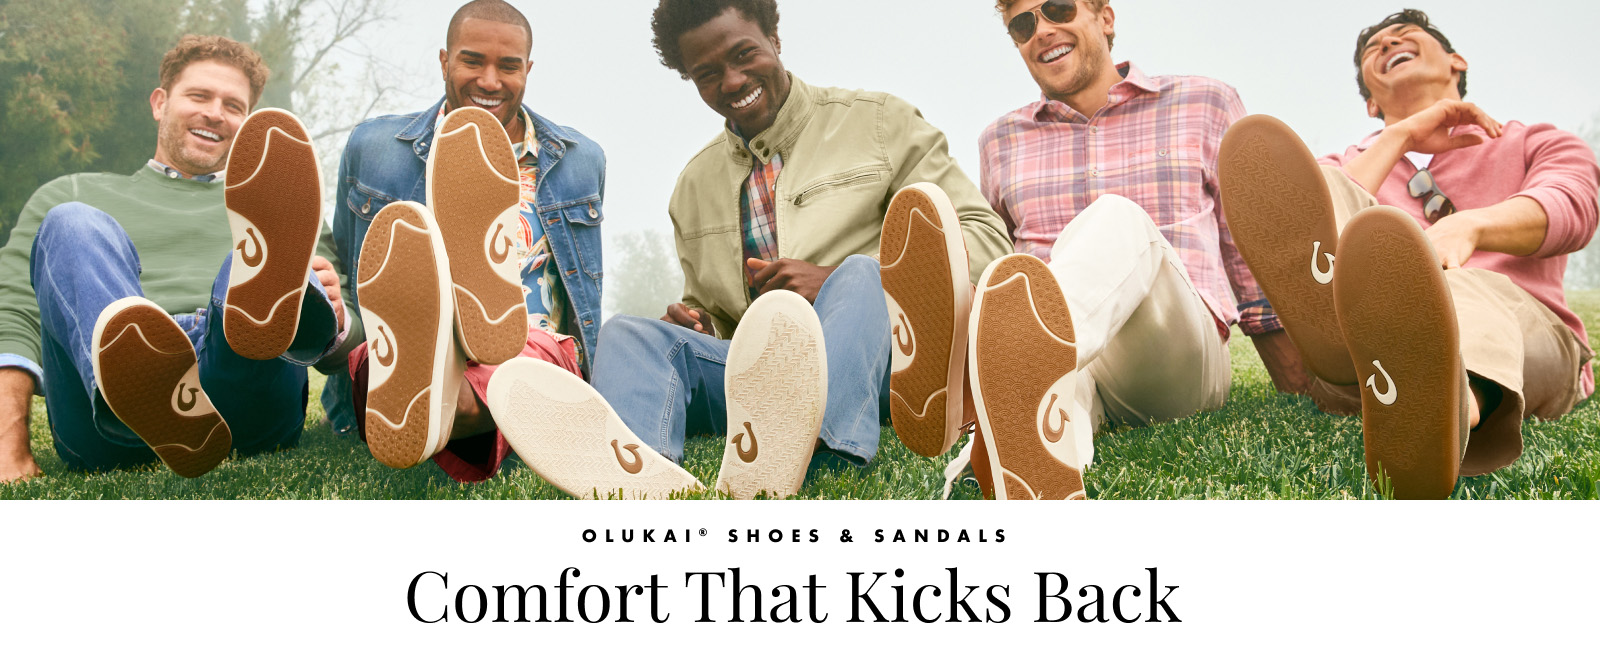 Men's Olukai Shoes & Sandals